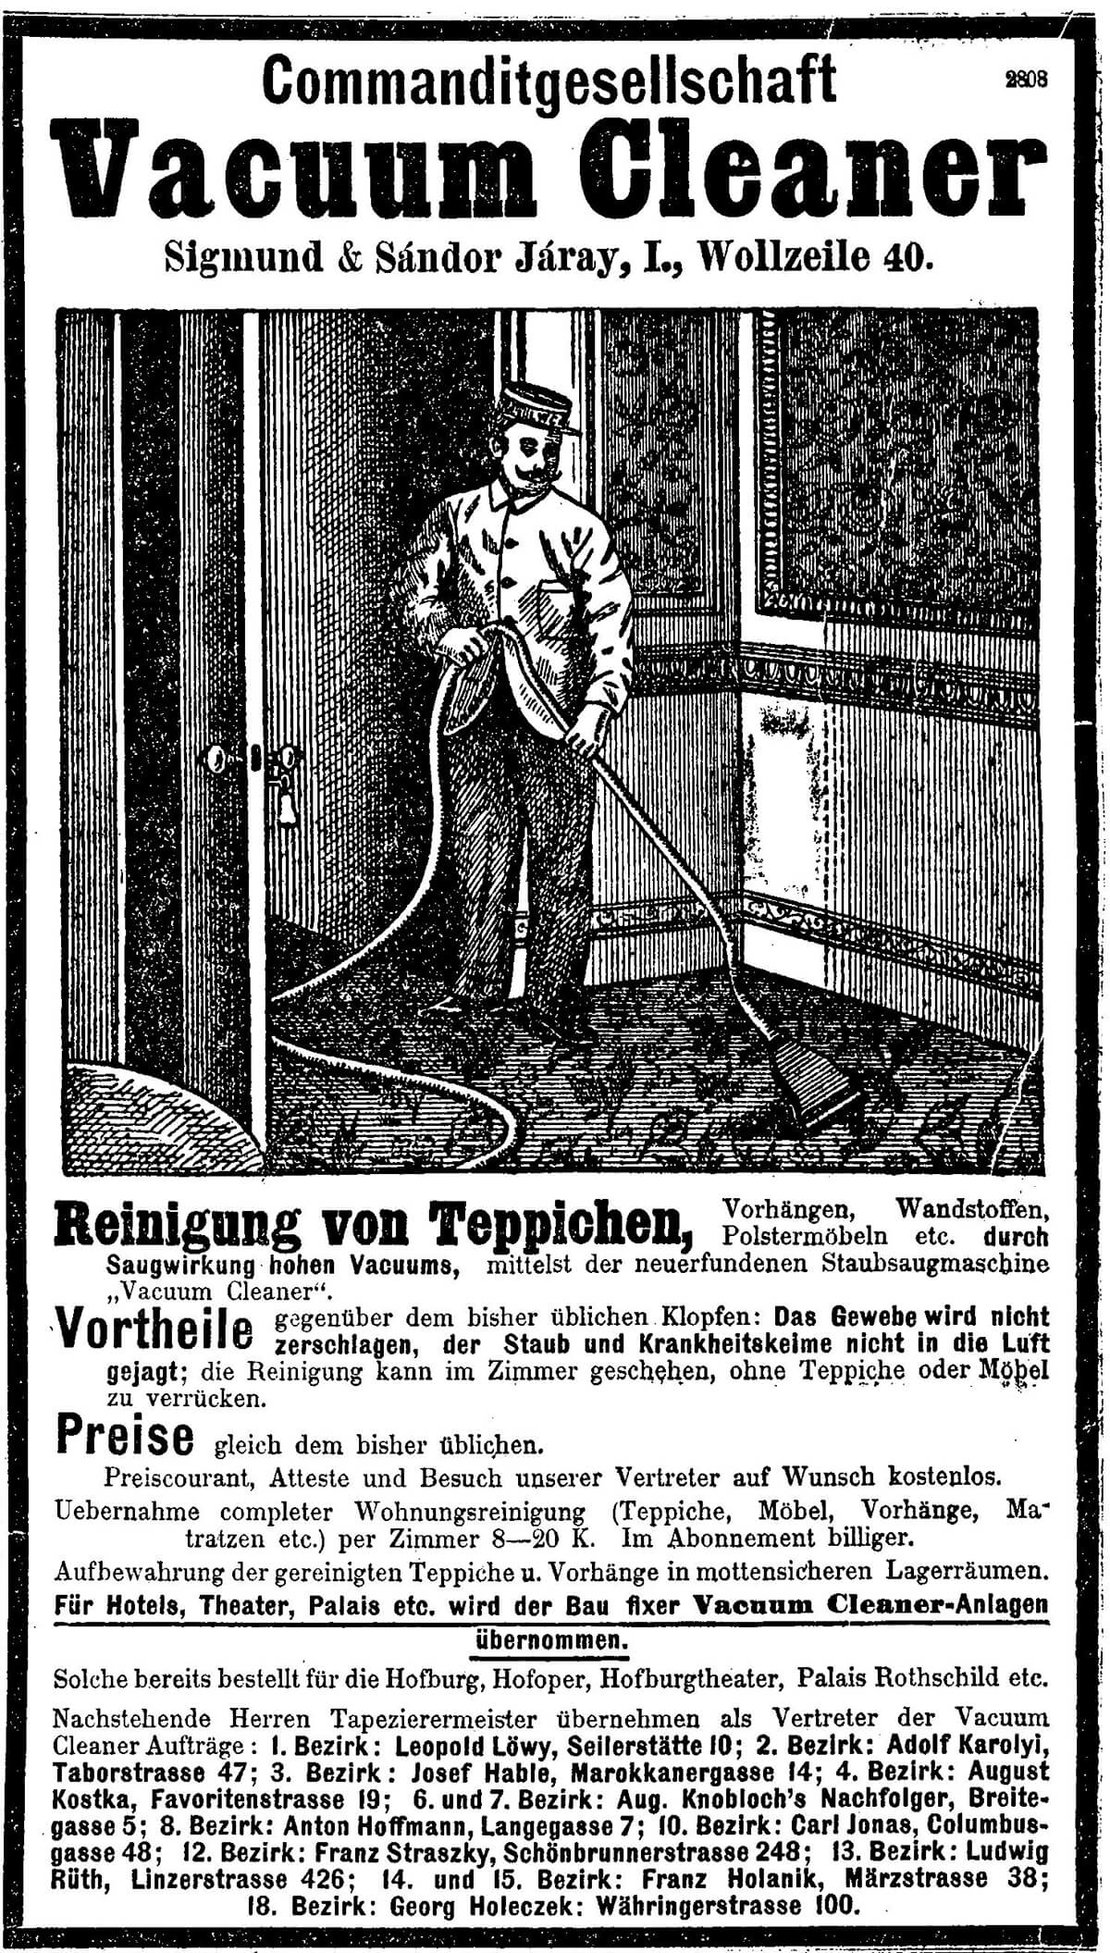 Annonce für Vacuum Cleaner der Firma Járay, in: Neues Wiener Journal, 20.6.1903, S. 13, Anno/ÖNB 